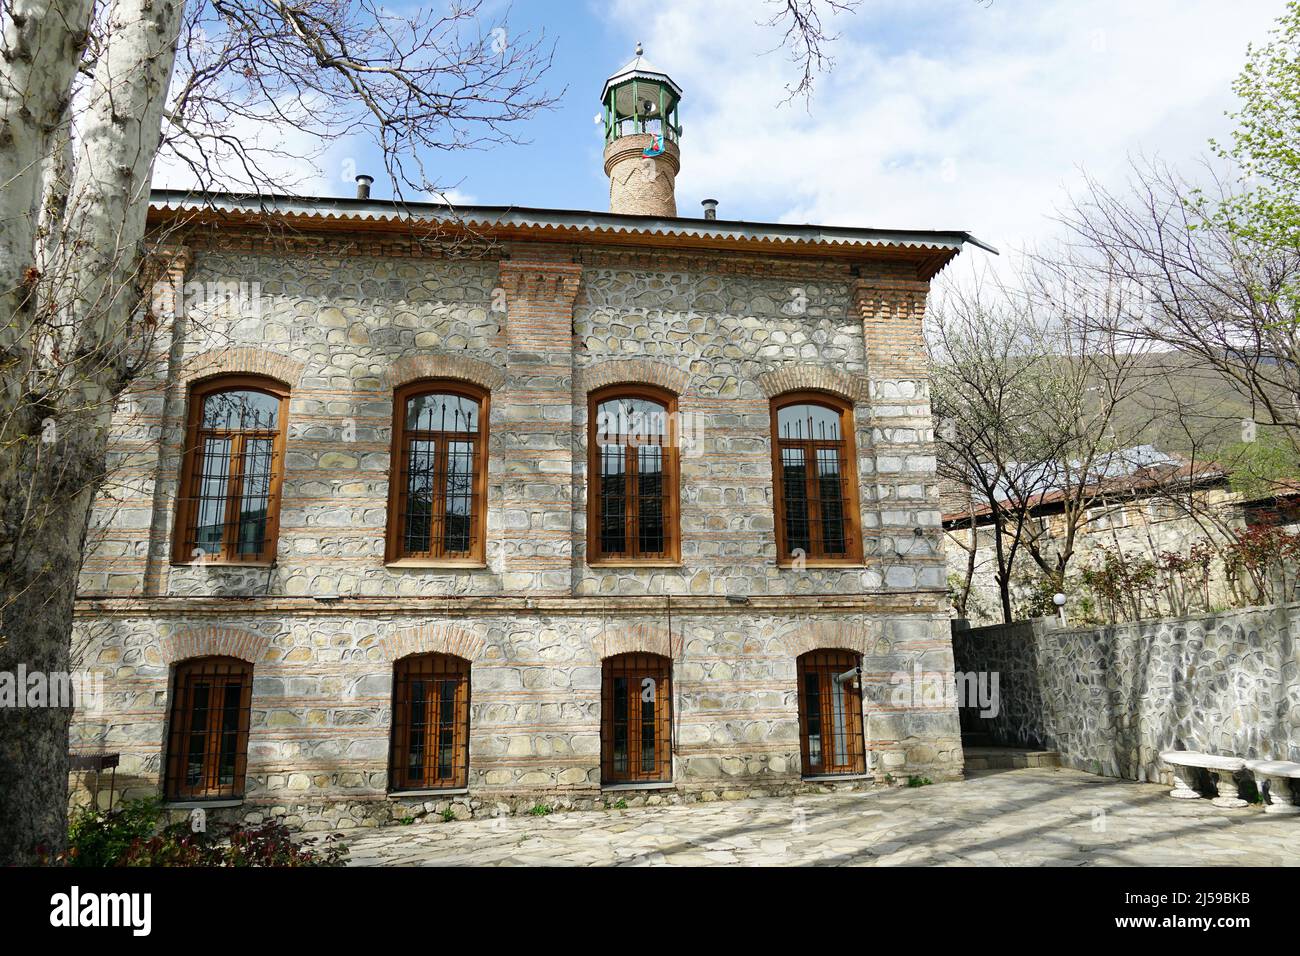 Imam Ali Mosque, İmam Əli məscidi, Shaki, Şəki, Azerbaijan, Azərbaycan, Asia Stock Photo